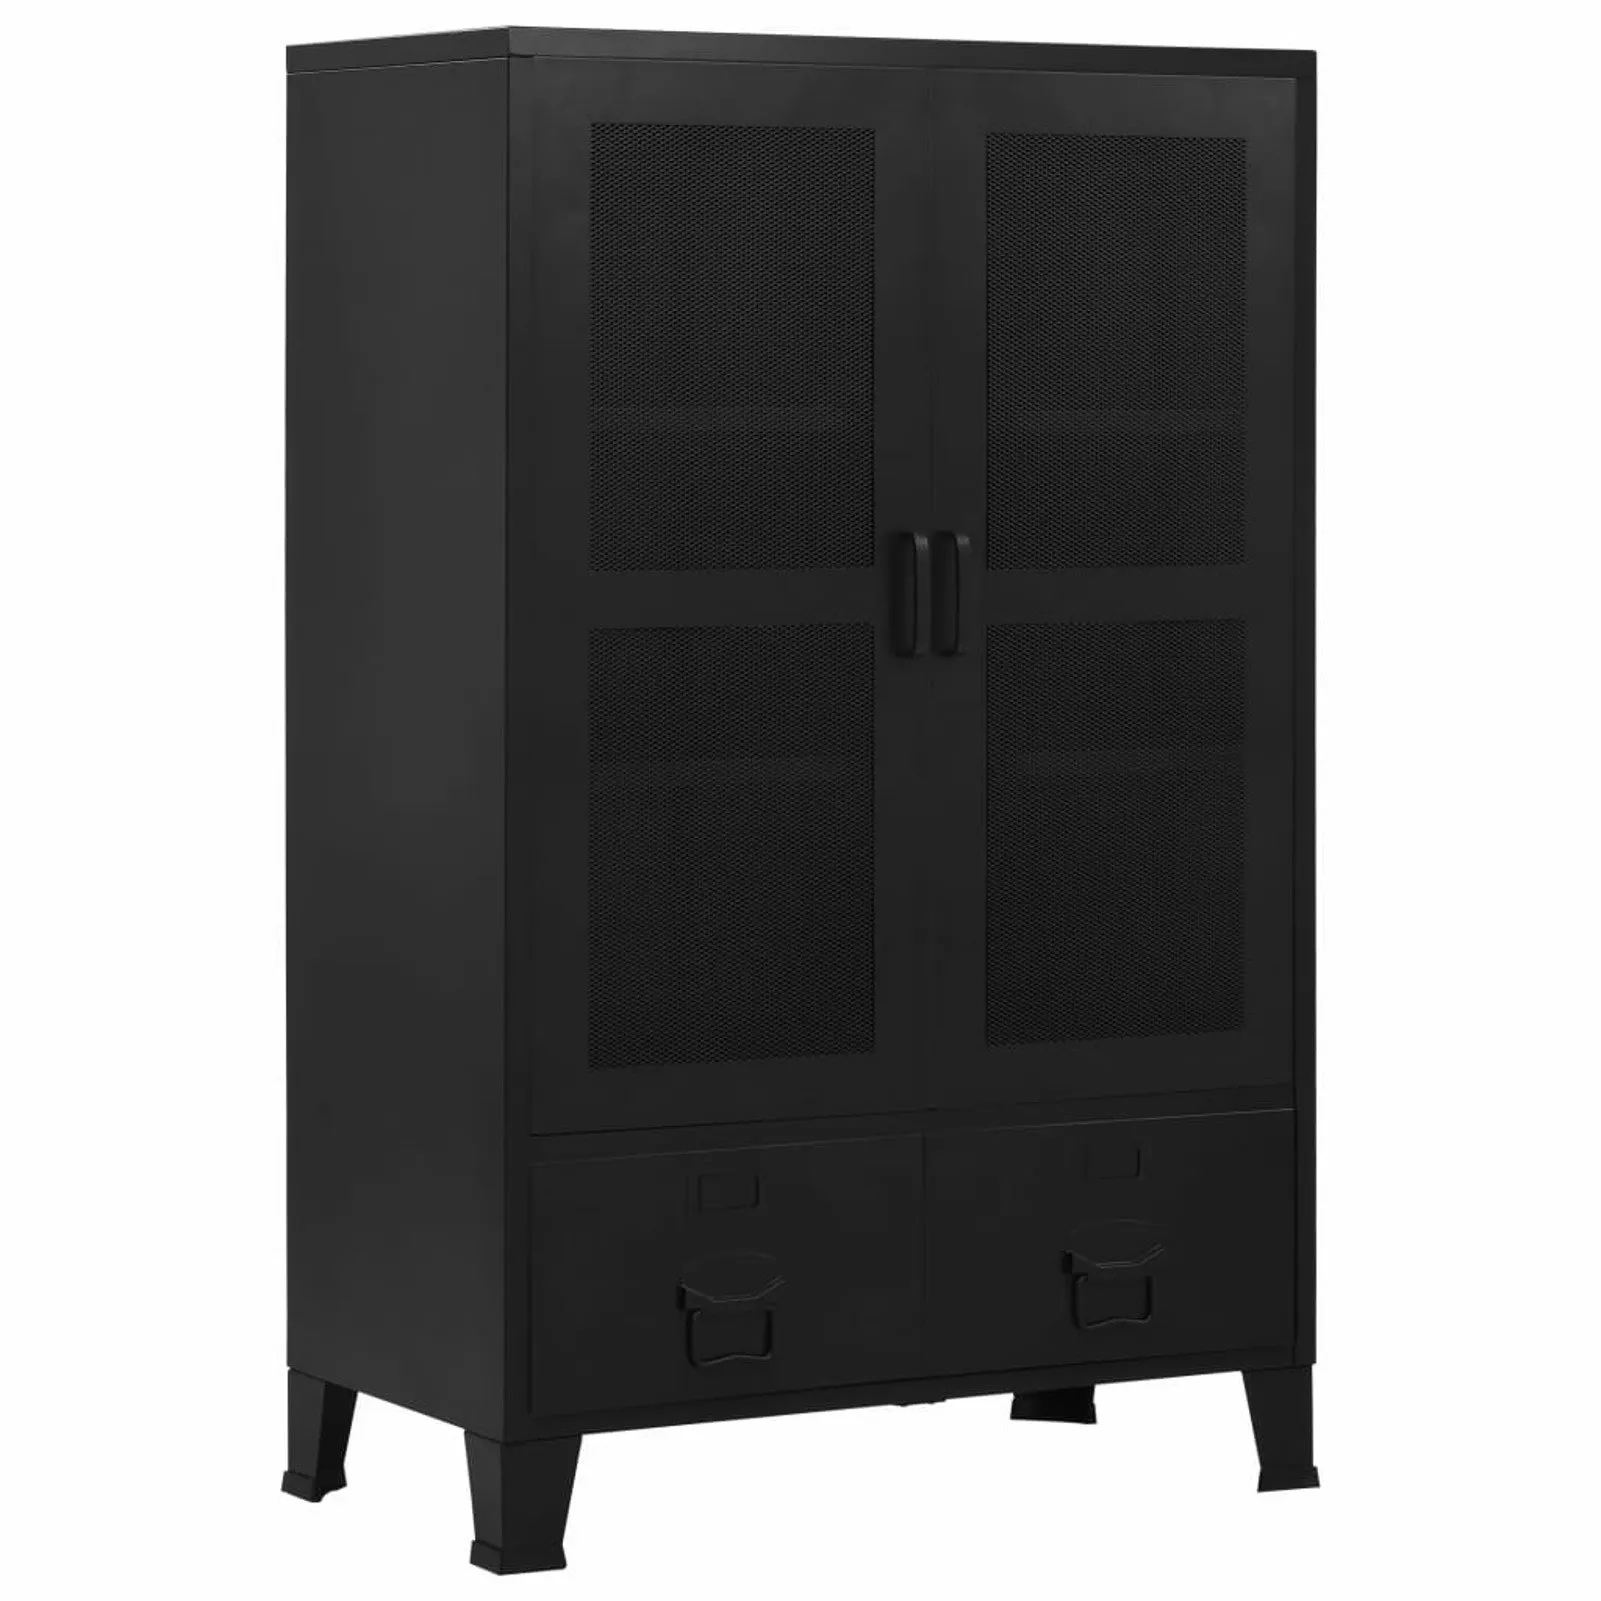 

Office Cabinet with Mesh Doors Industrial Black 29.5"x15.7"x47.2" Steel